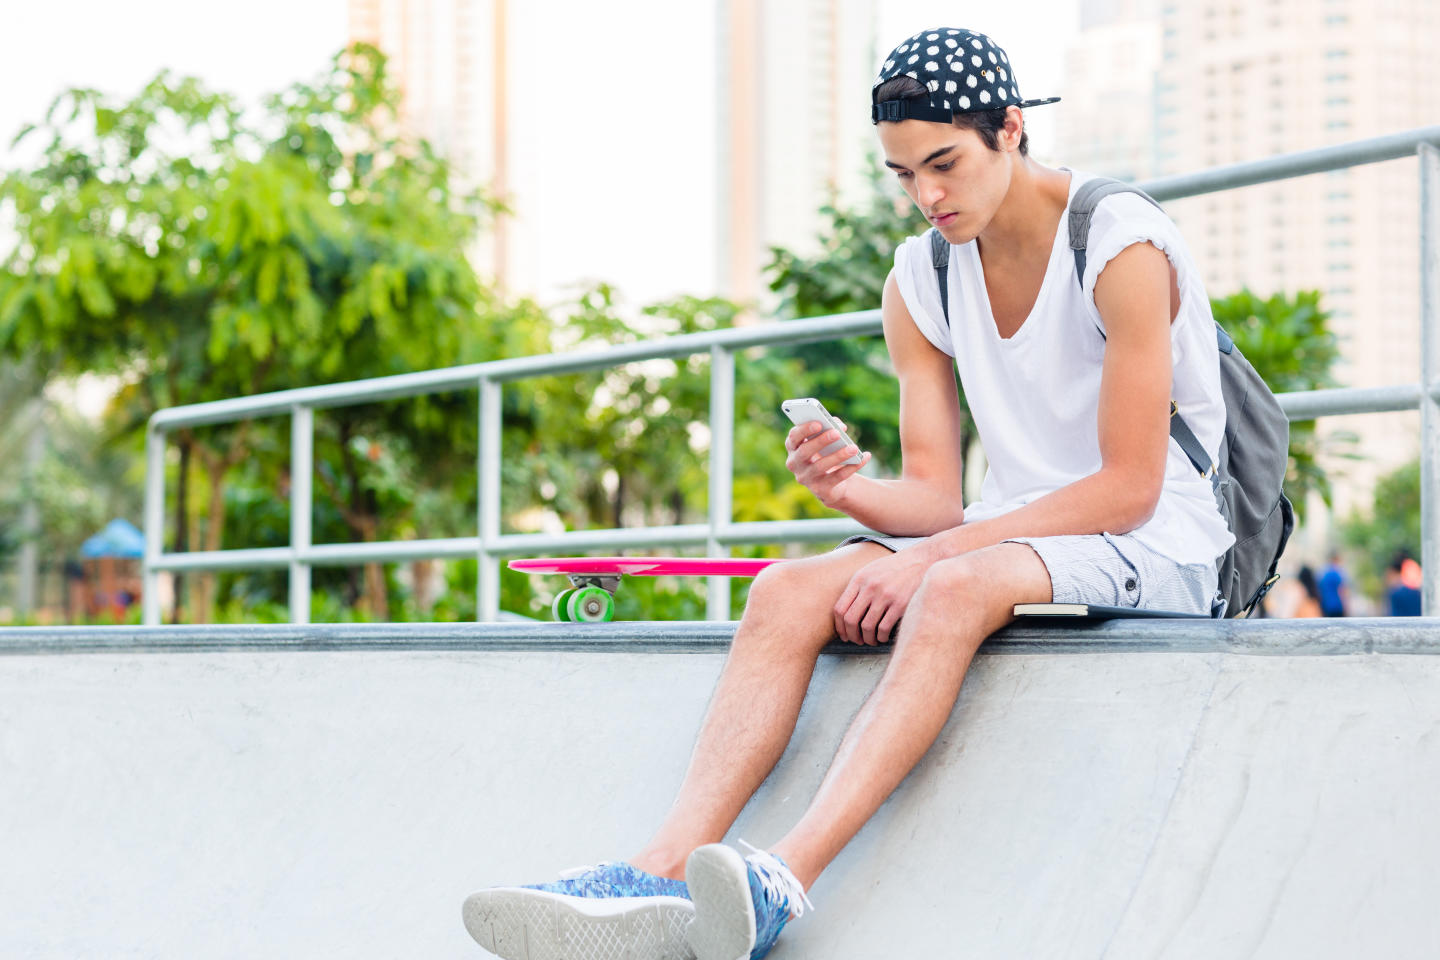 Teen boy texting at a skate park